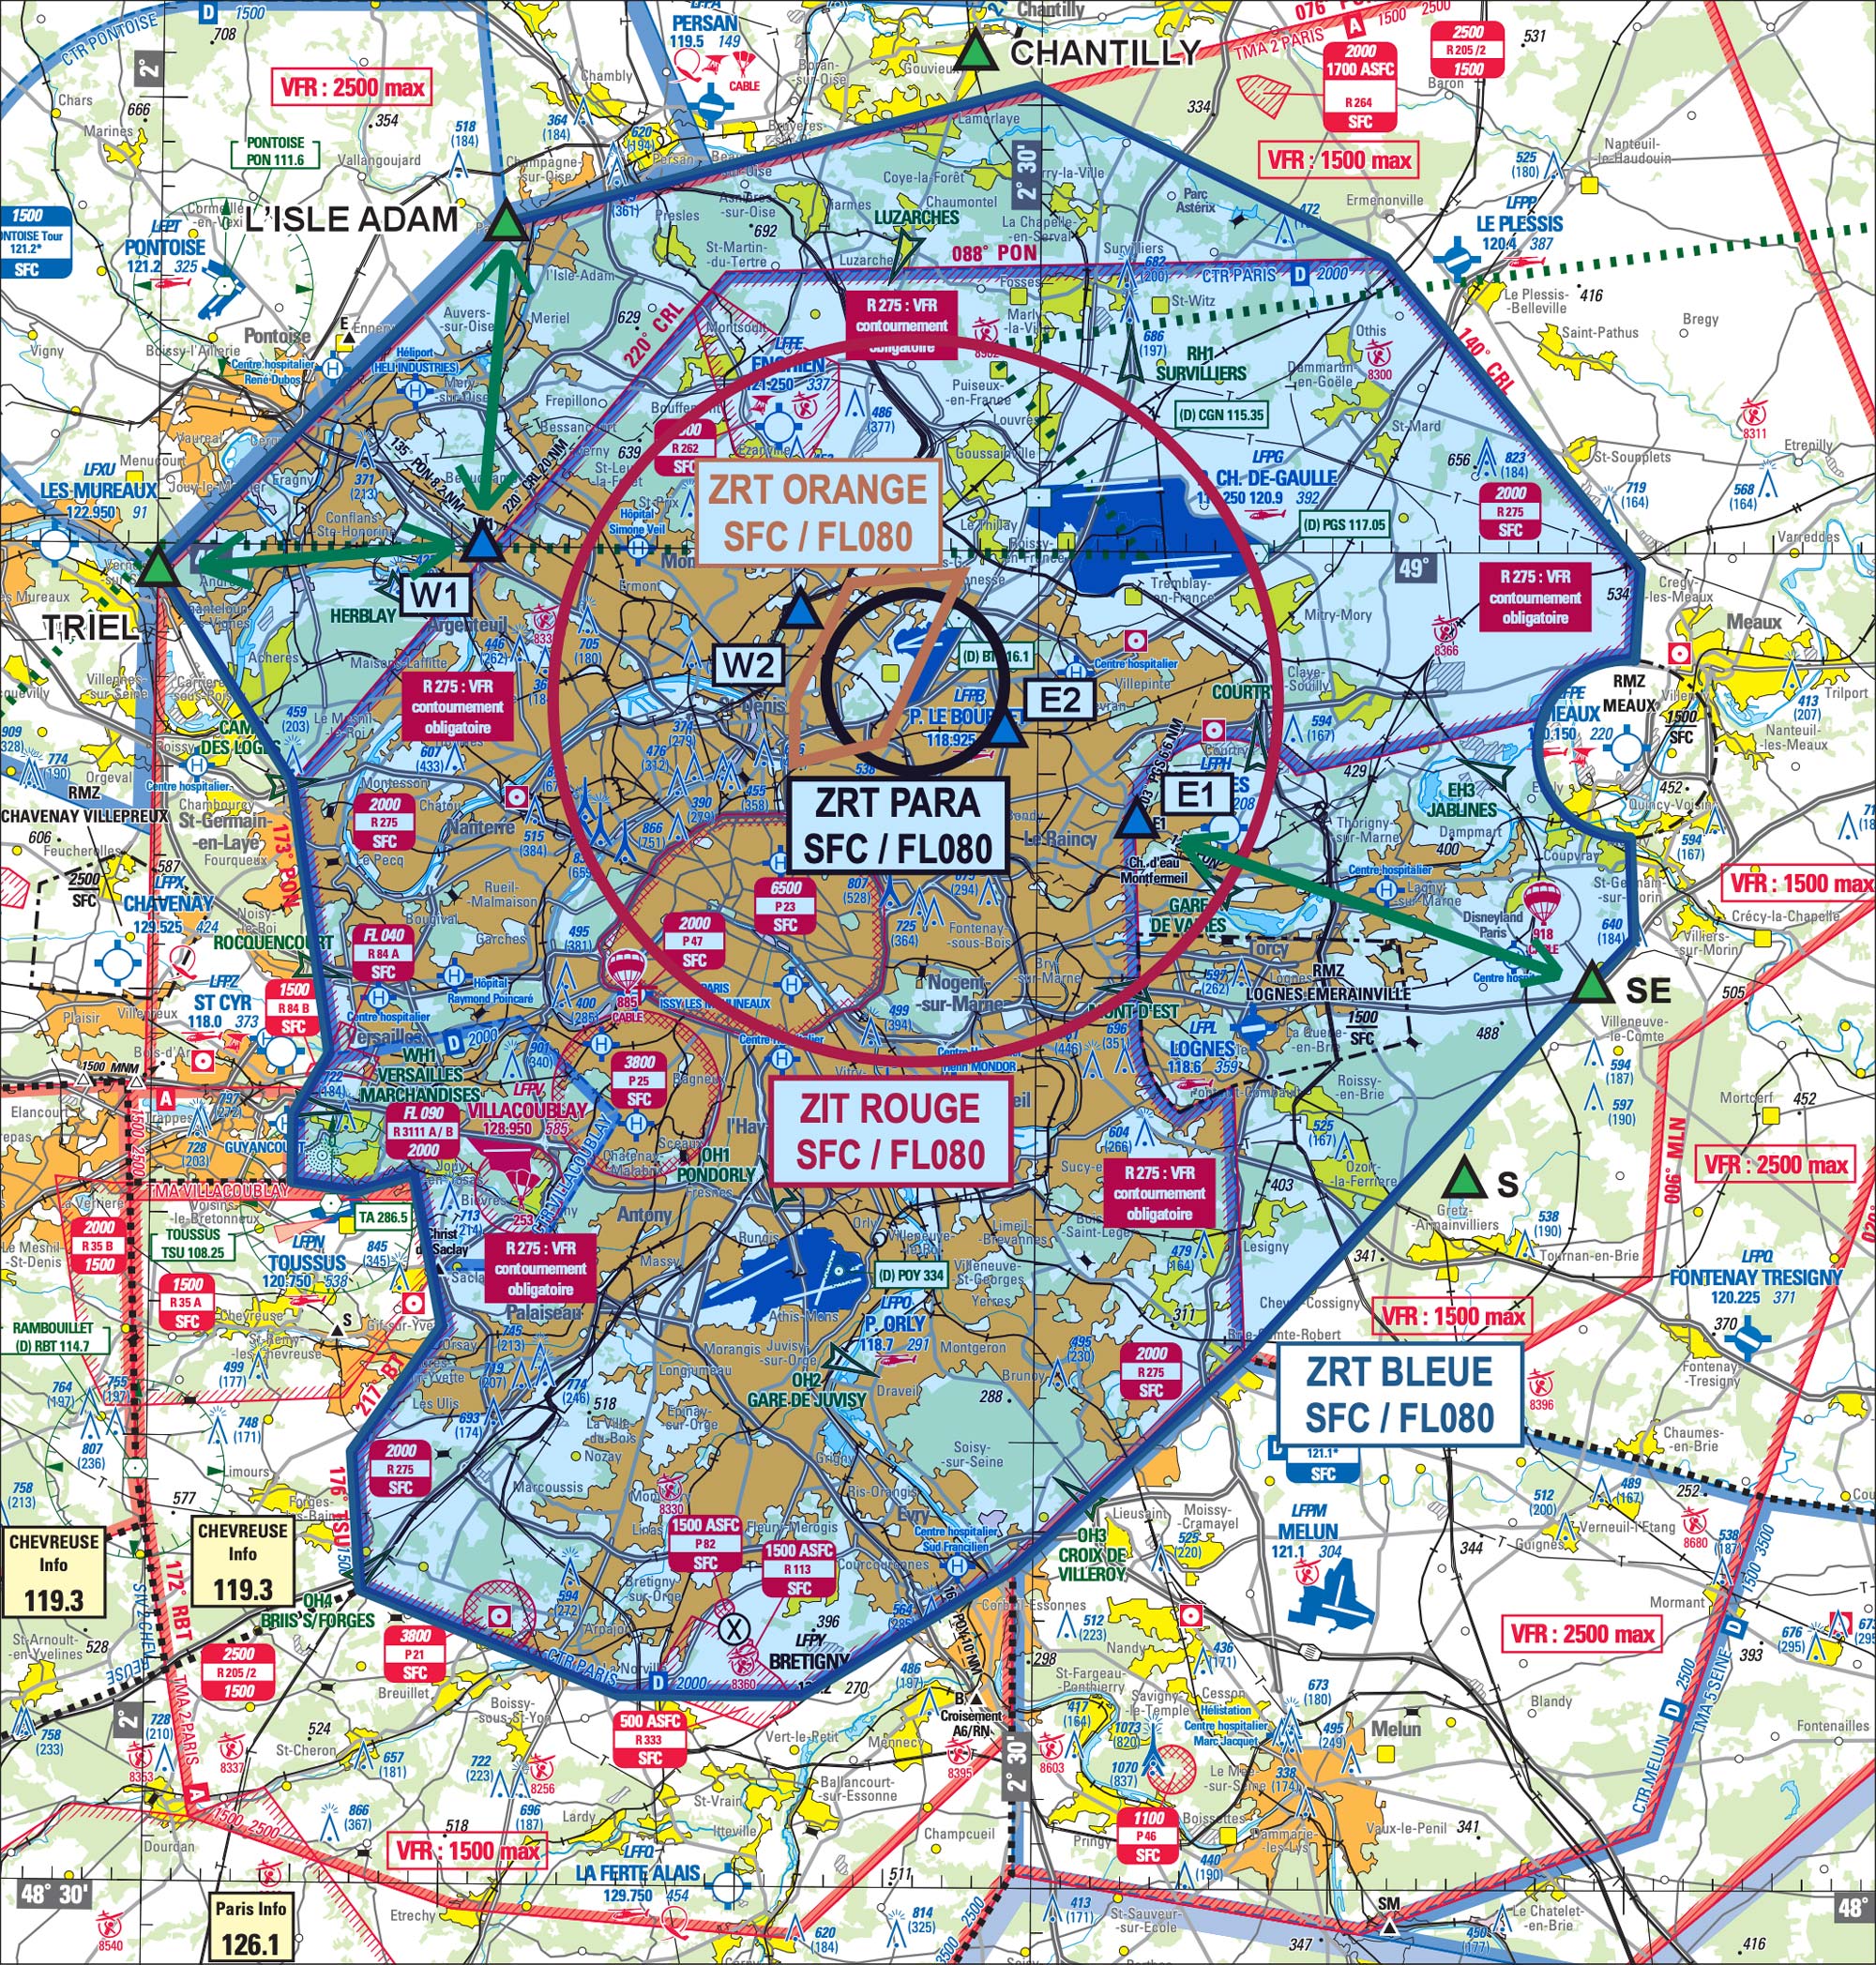 Restrictions de vol de drone en Région Parisienne en raison au salon du Bourget 2019